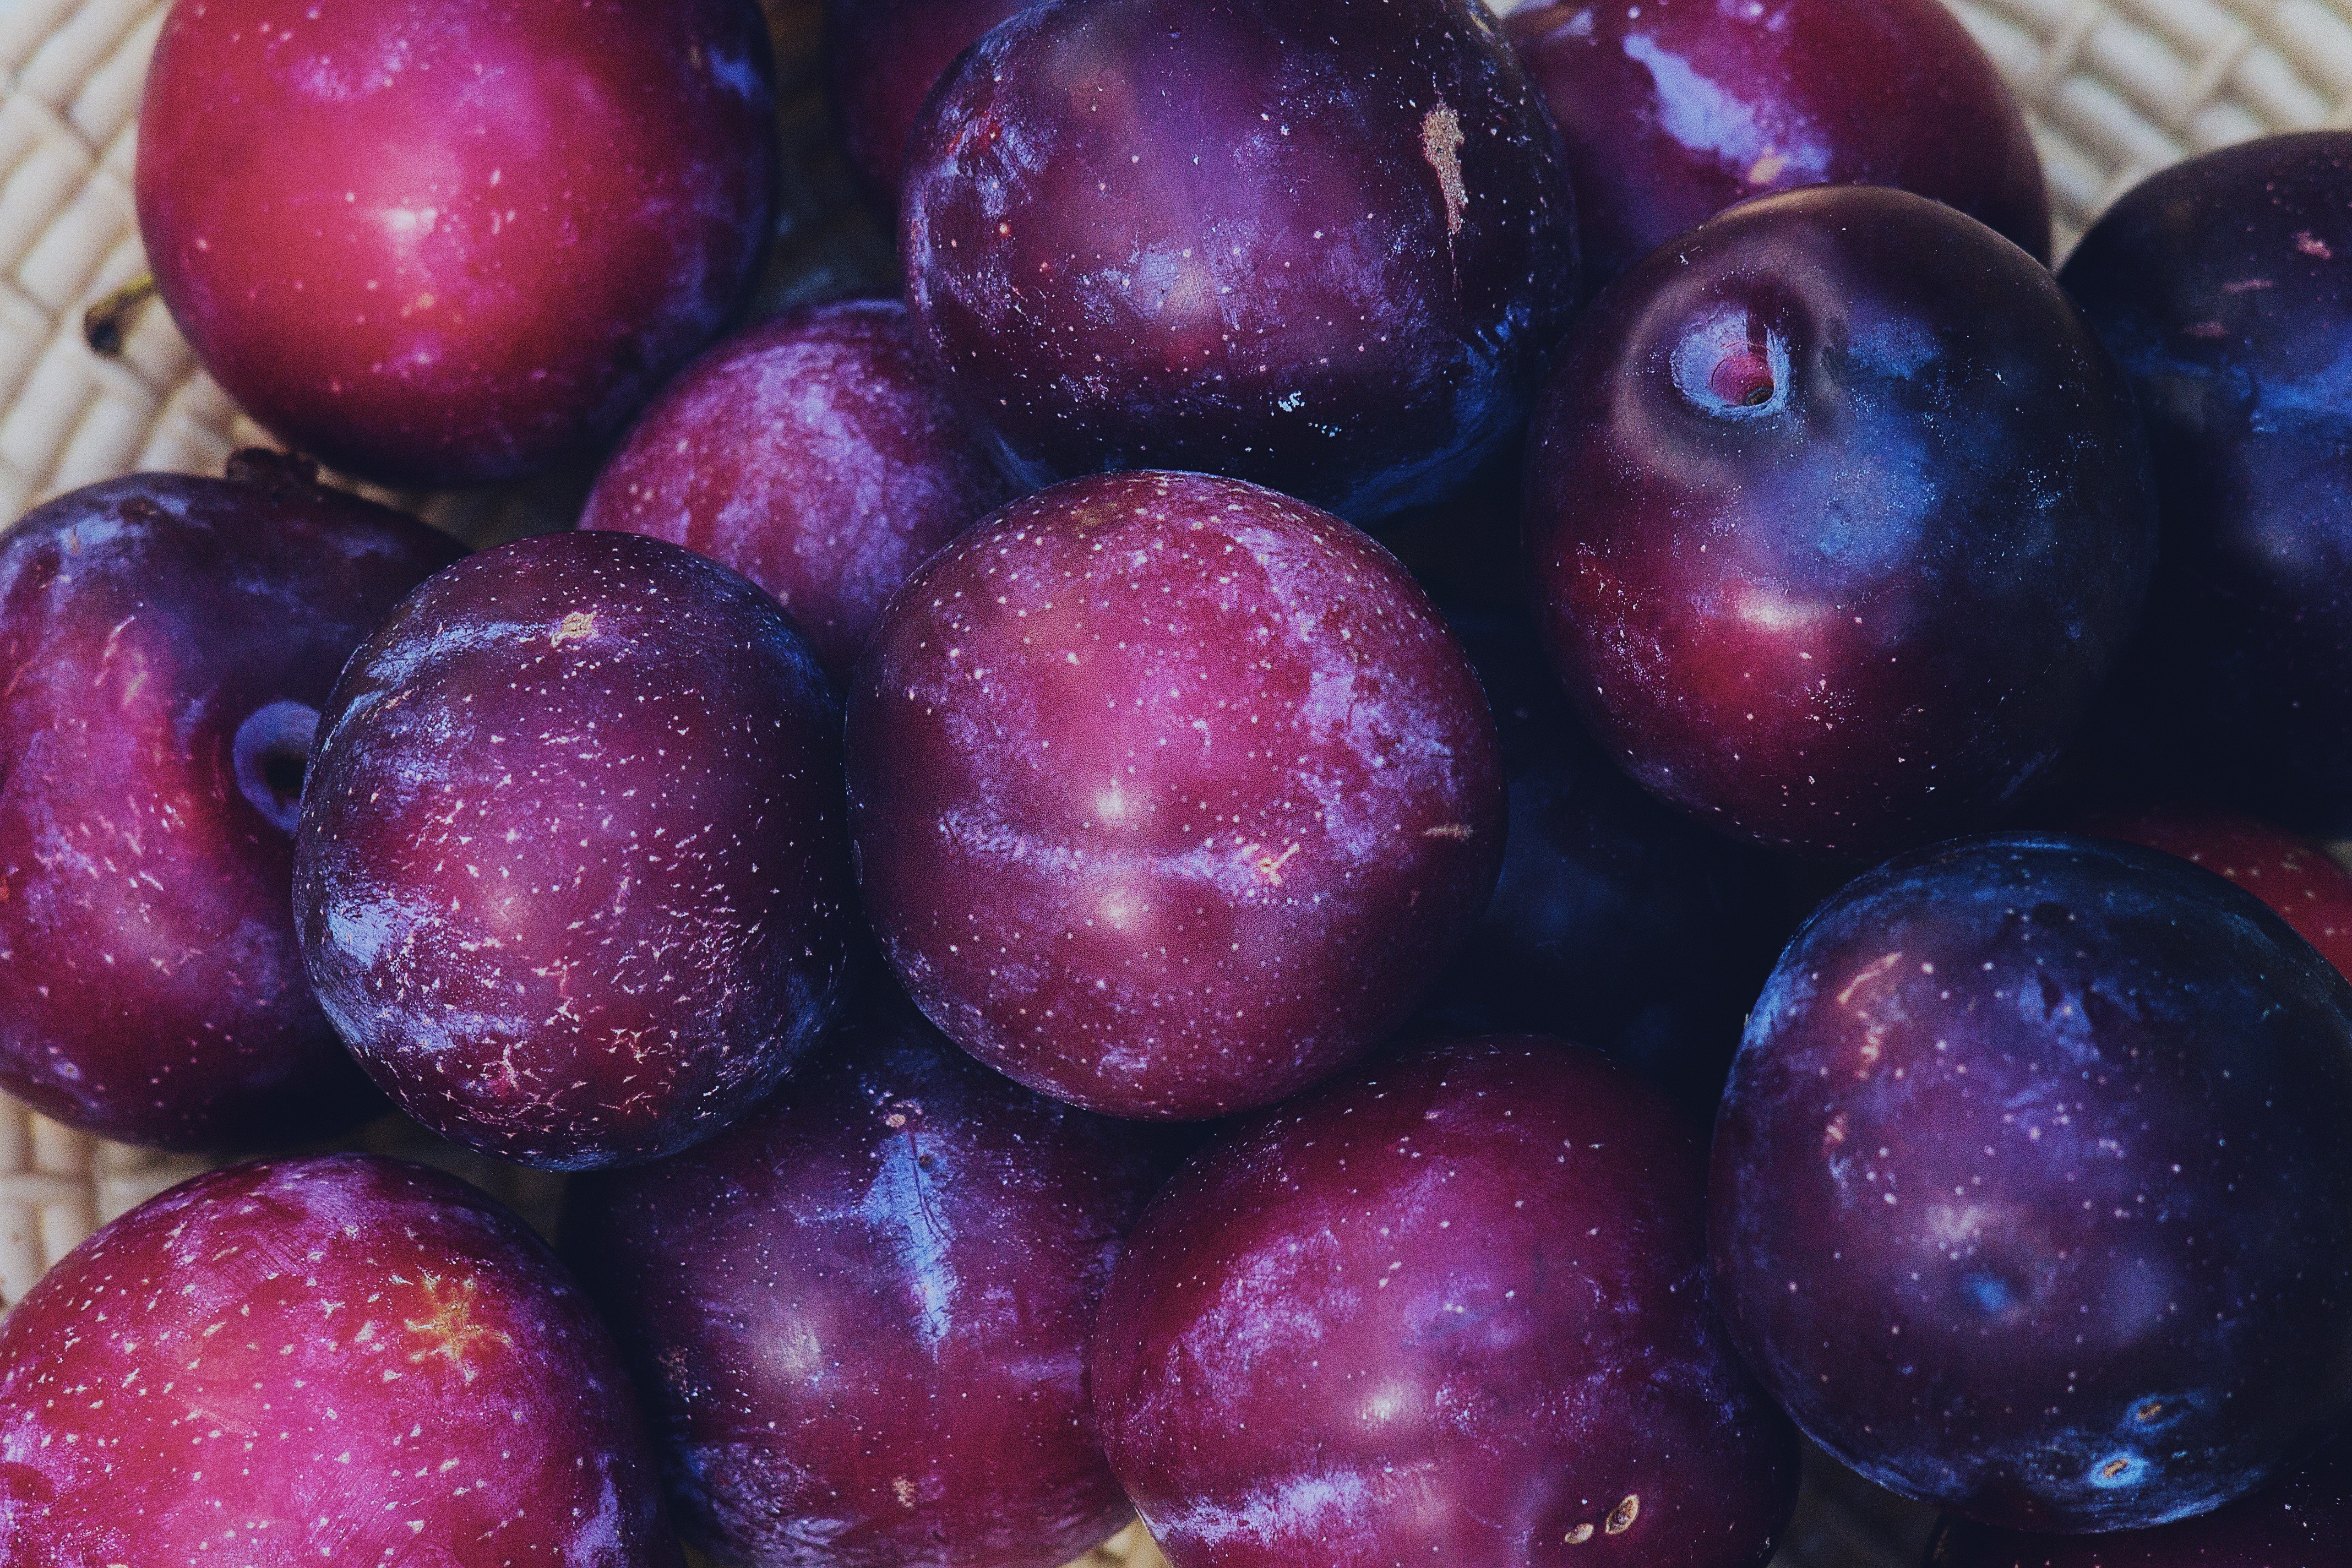 General 4272x2848 fruit macro purple plums (fruits) food